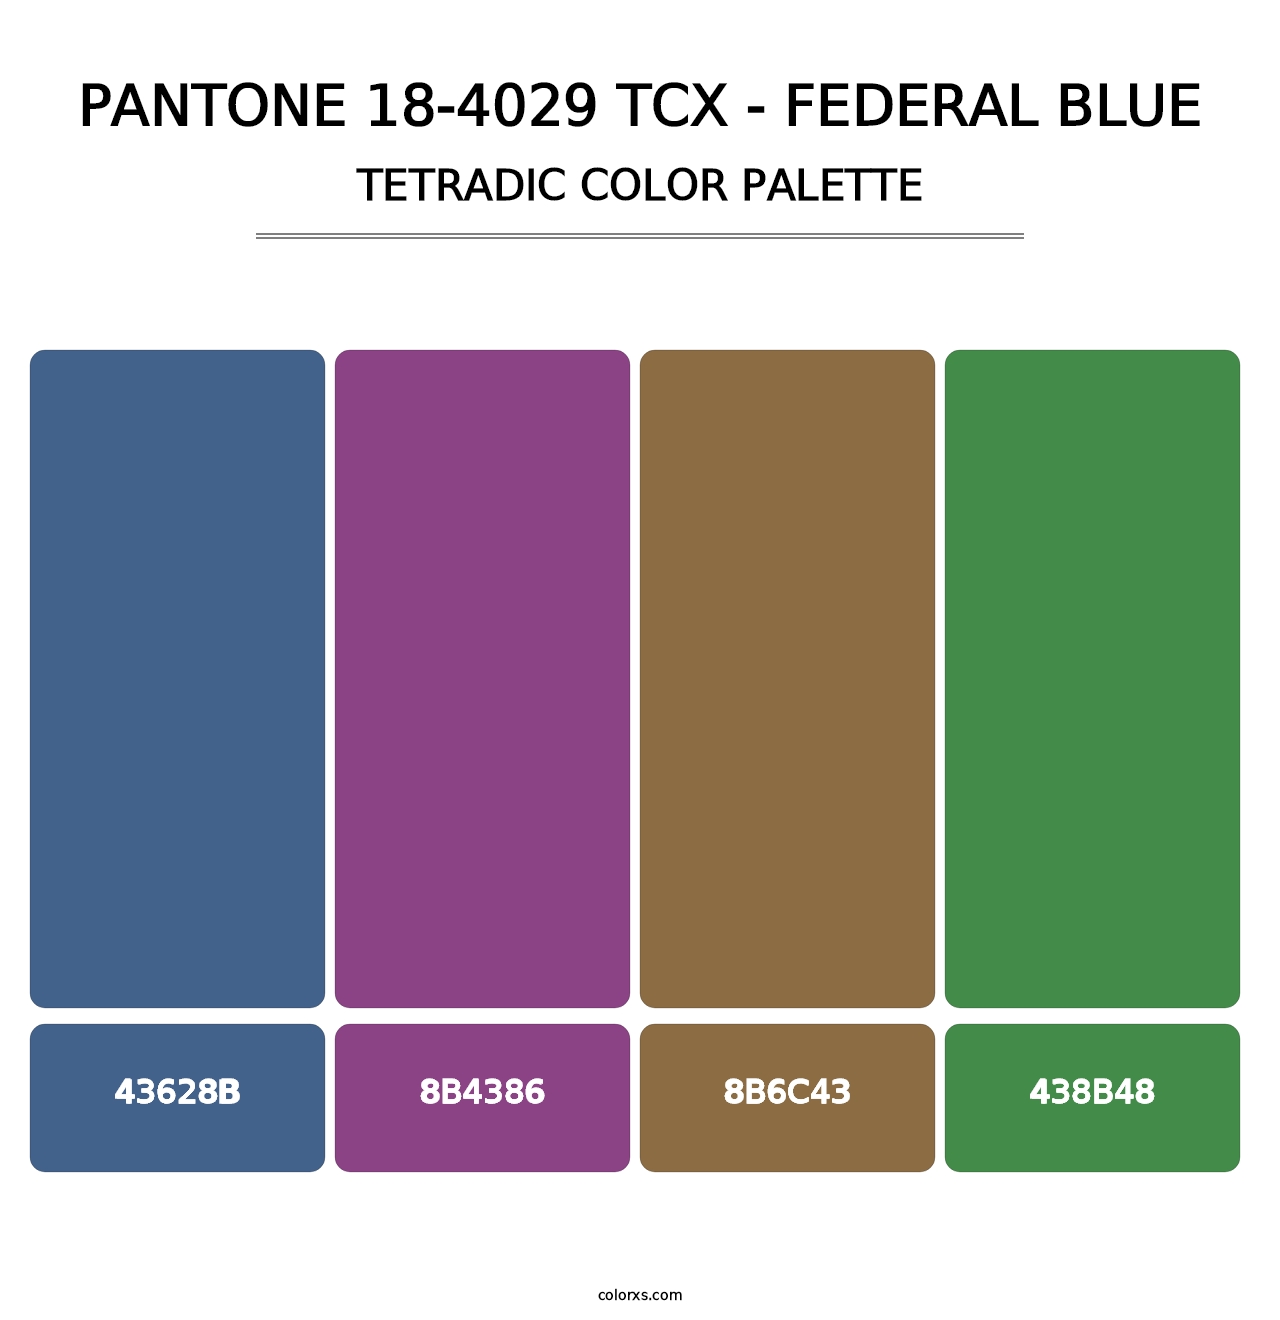 PANTONE 18-4029 TCX - Federal Blue - Tetradic Color Palette